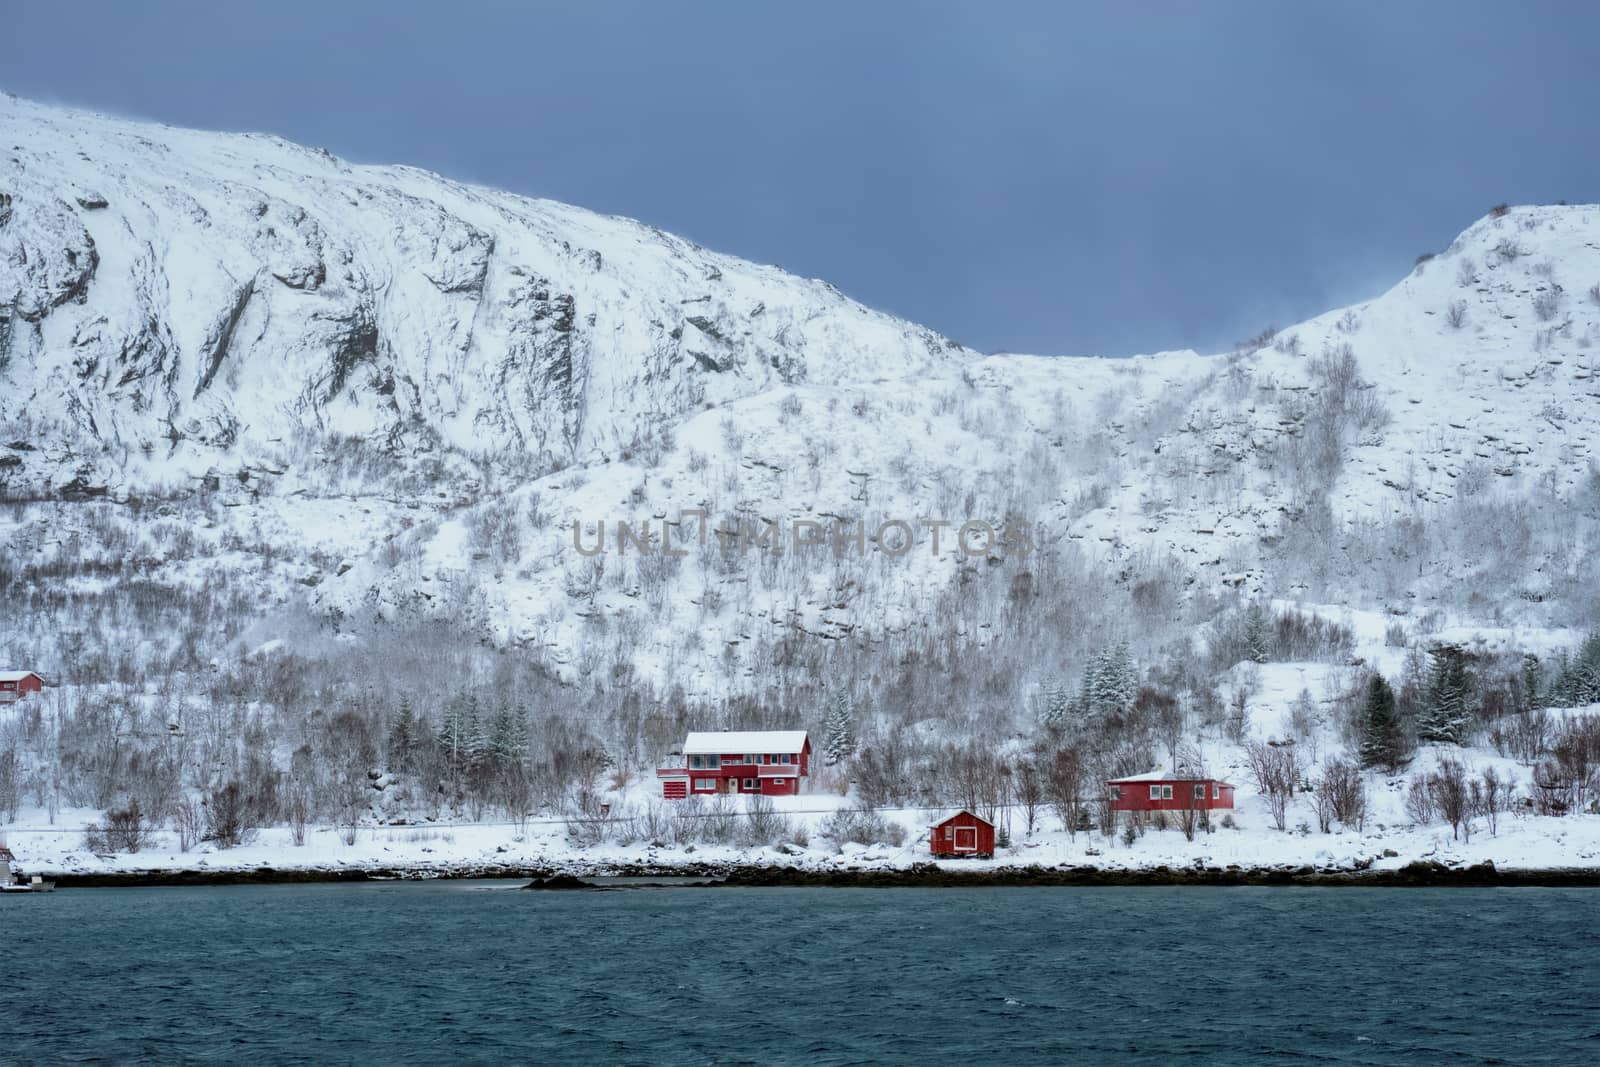 Rd rorbu houses in Norway in winter by dimol